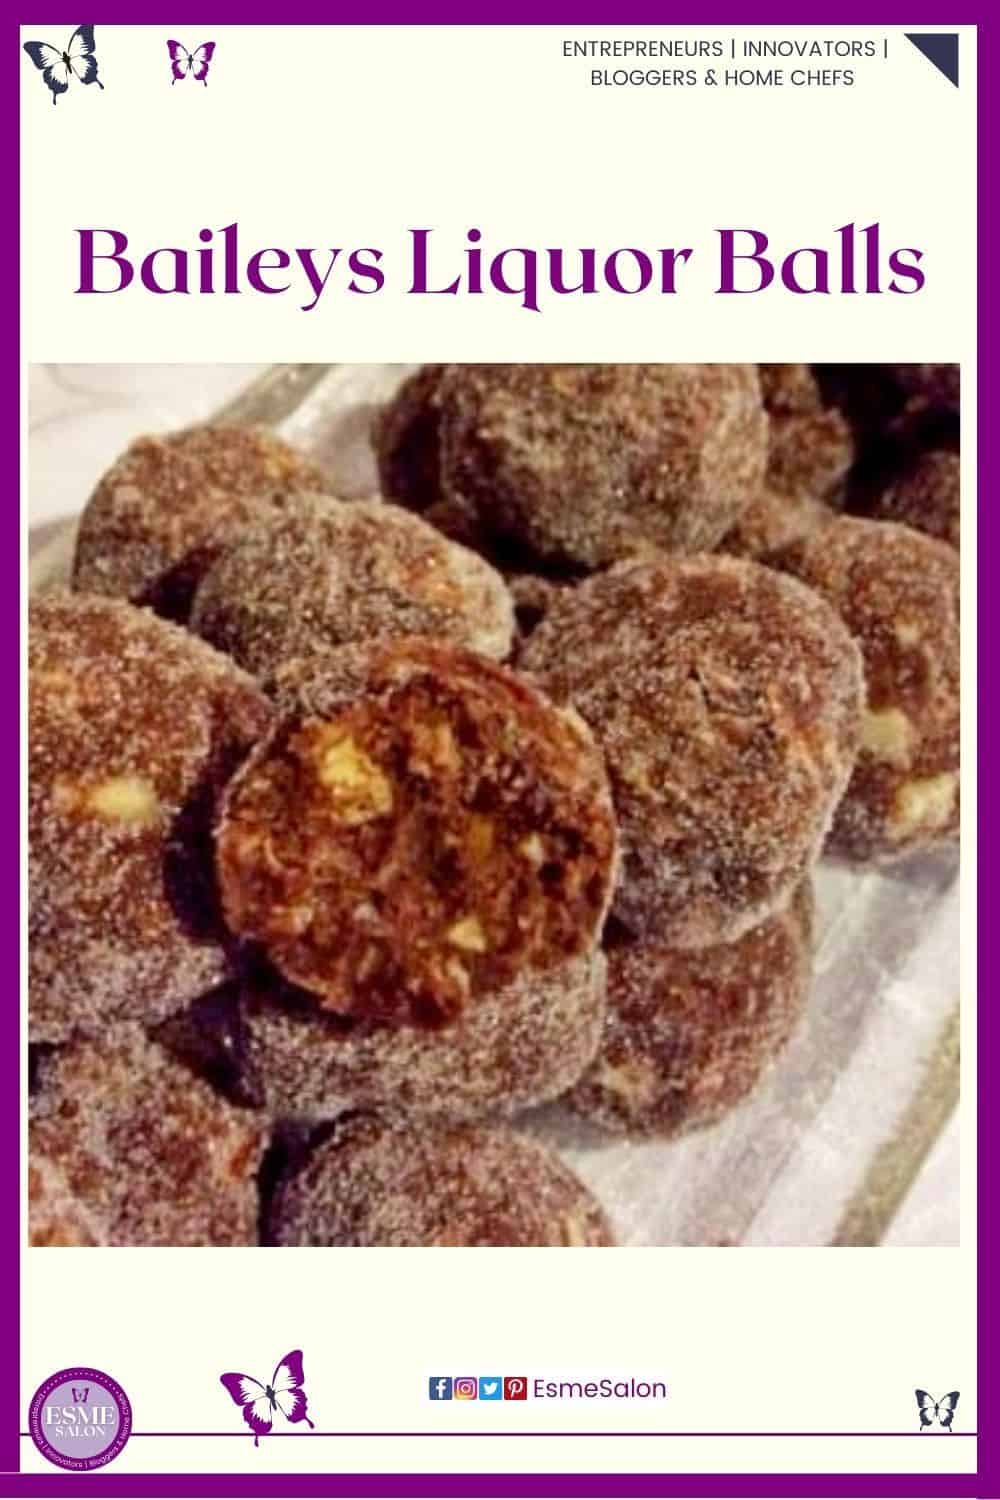 an image of Baileys Liquor Balls on a long glass platter